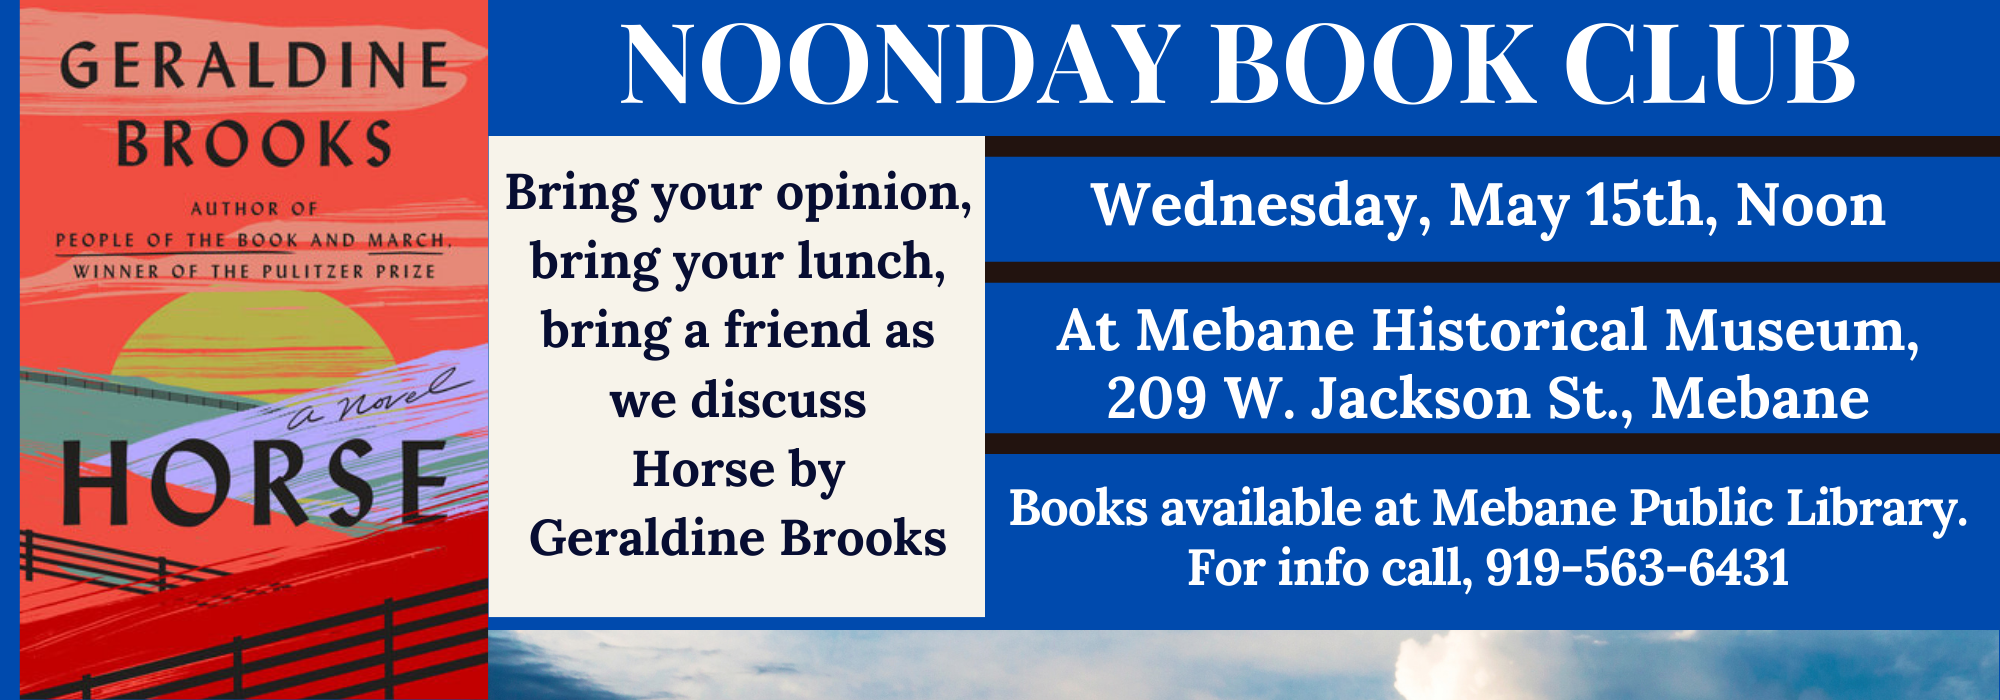 5.15 at Noon - Noonday Book Club at Mebane